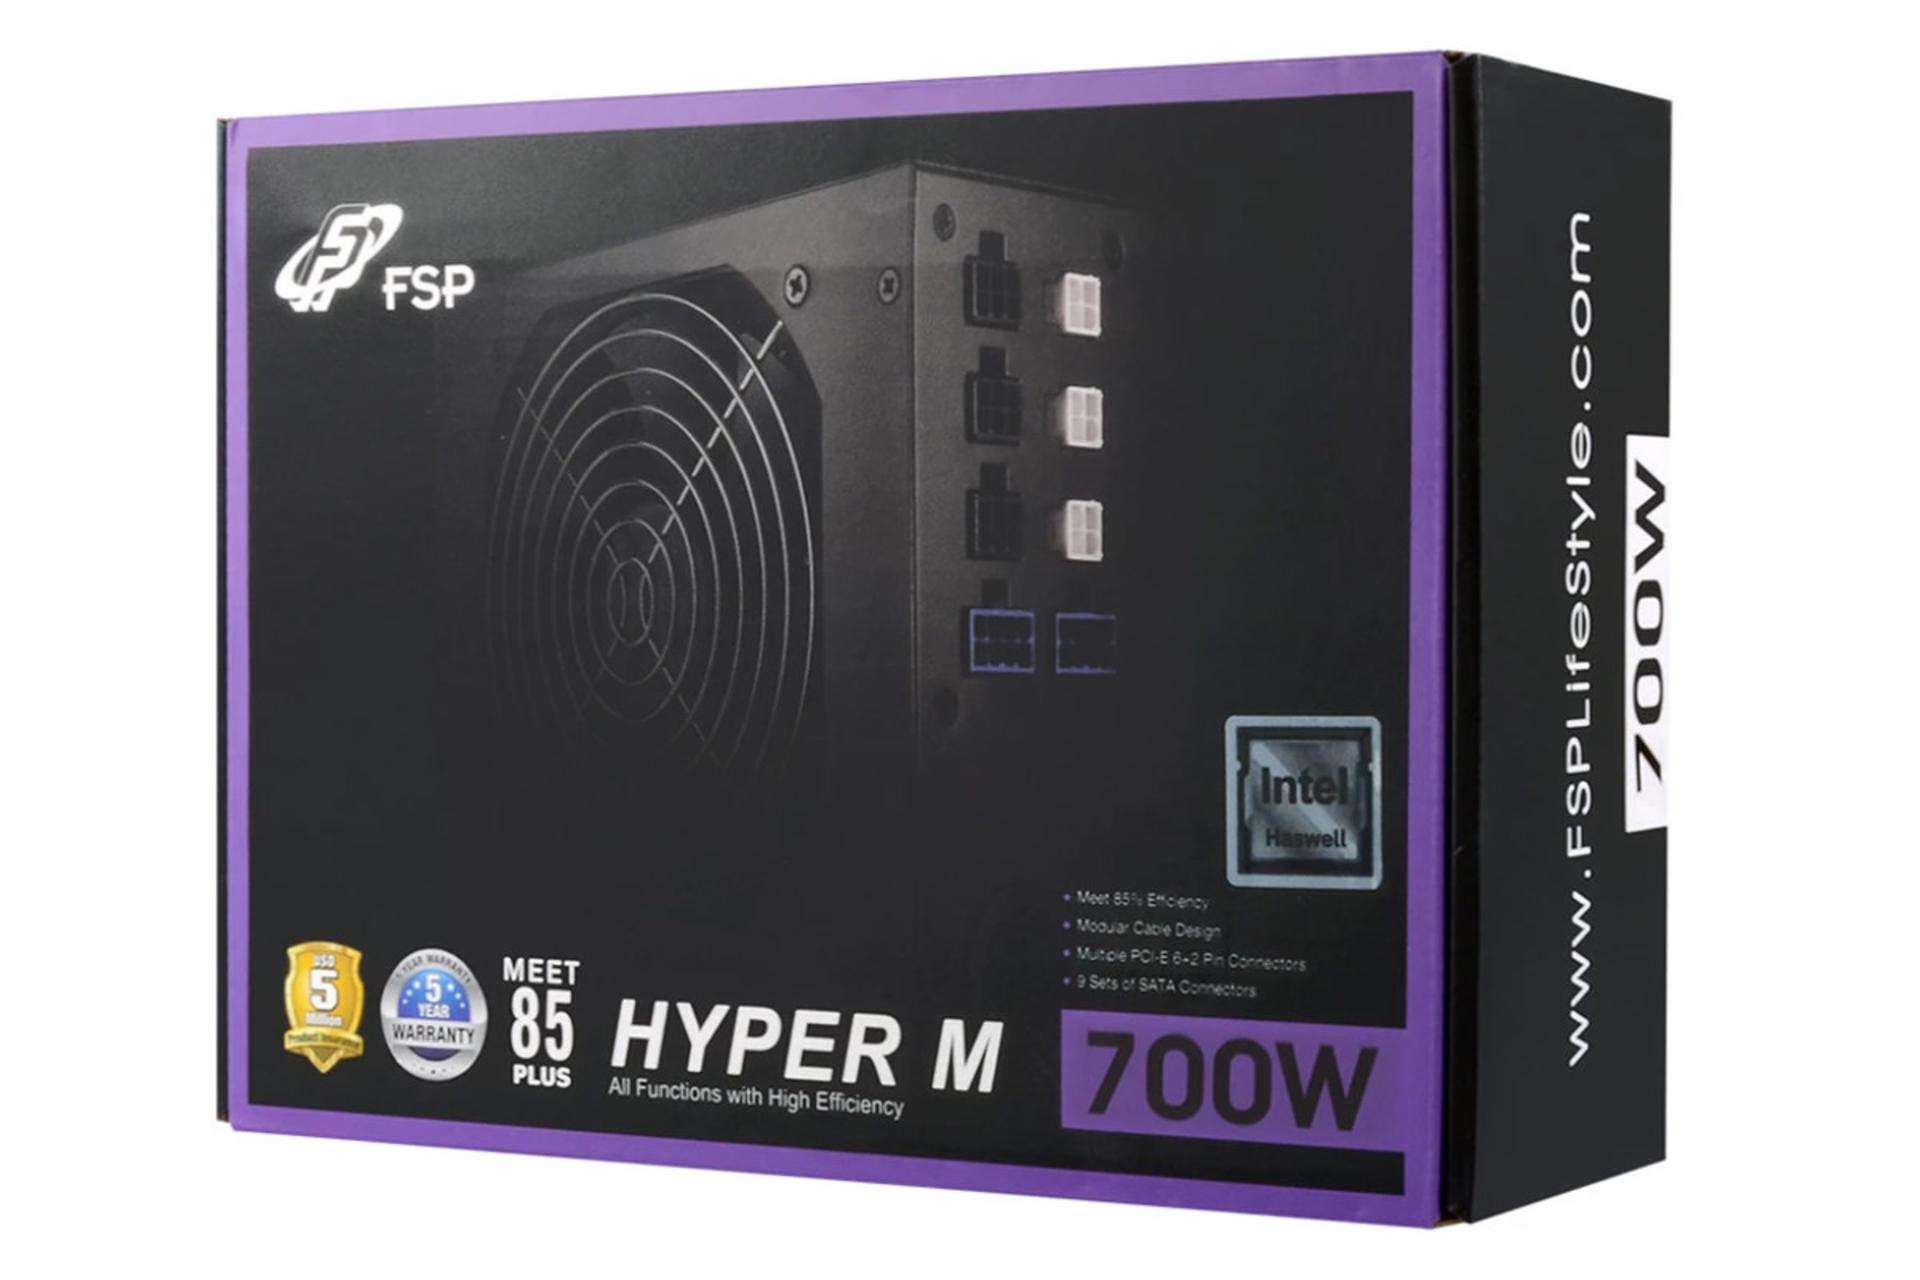 جعبه پاور کامپیوتر اف اس پی HYPER M با توان 700 وات